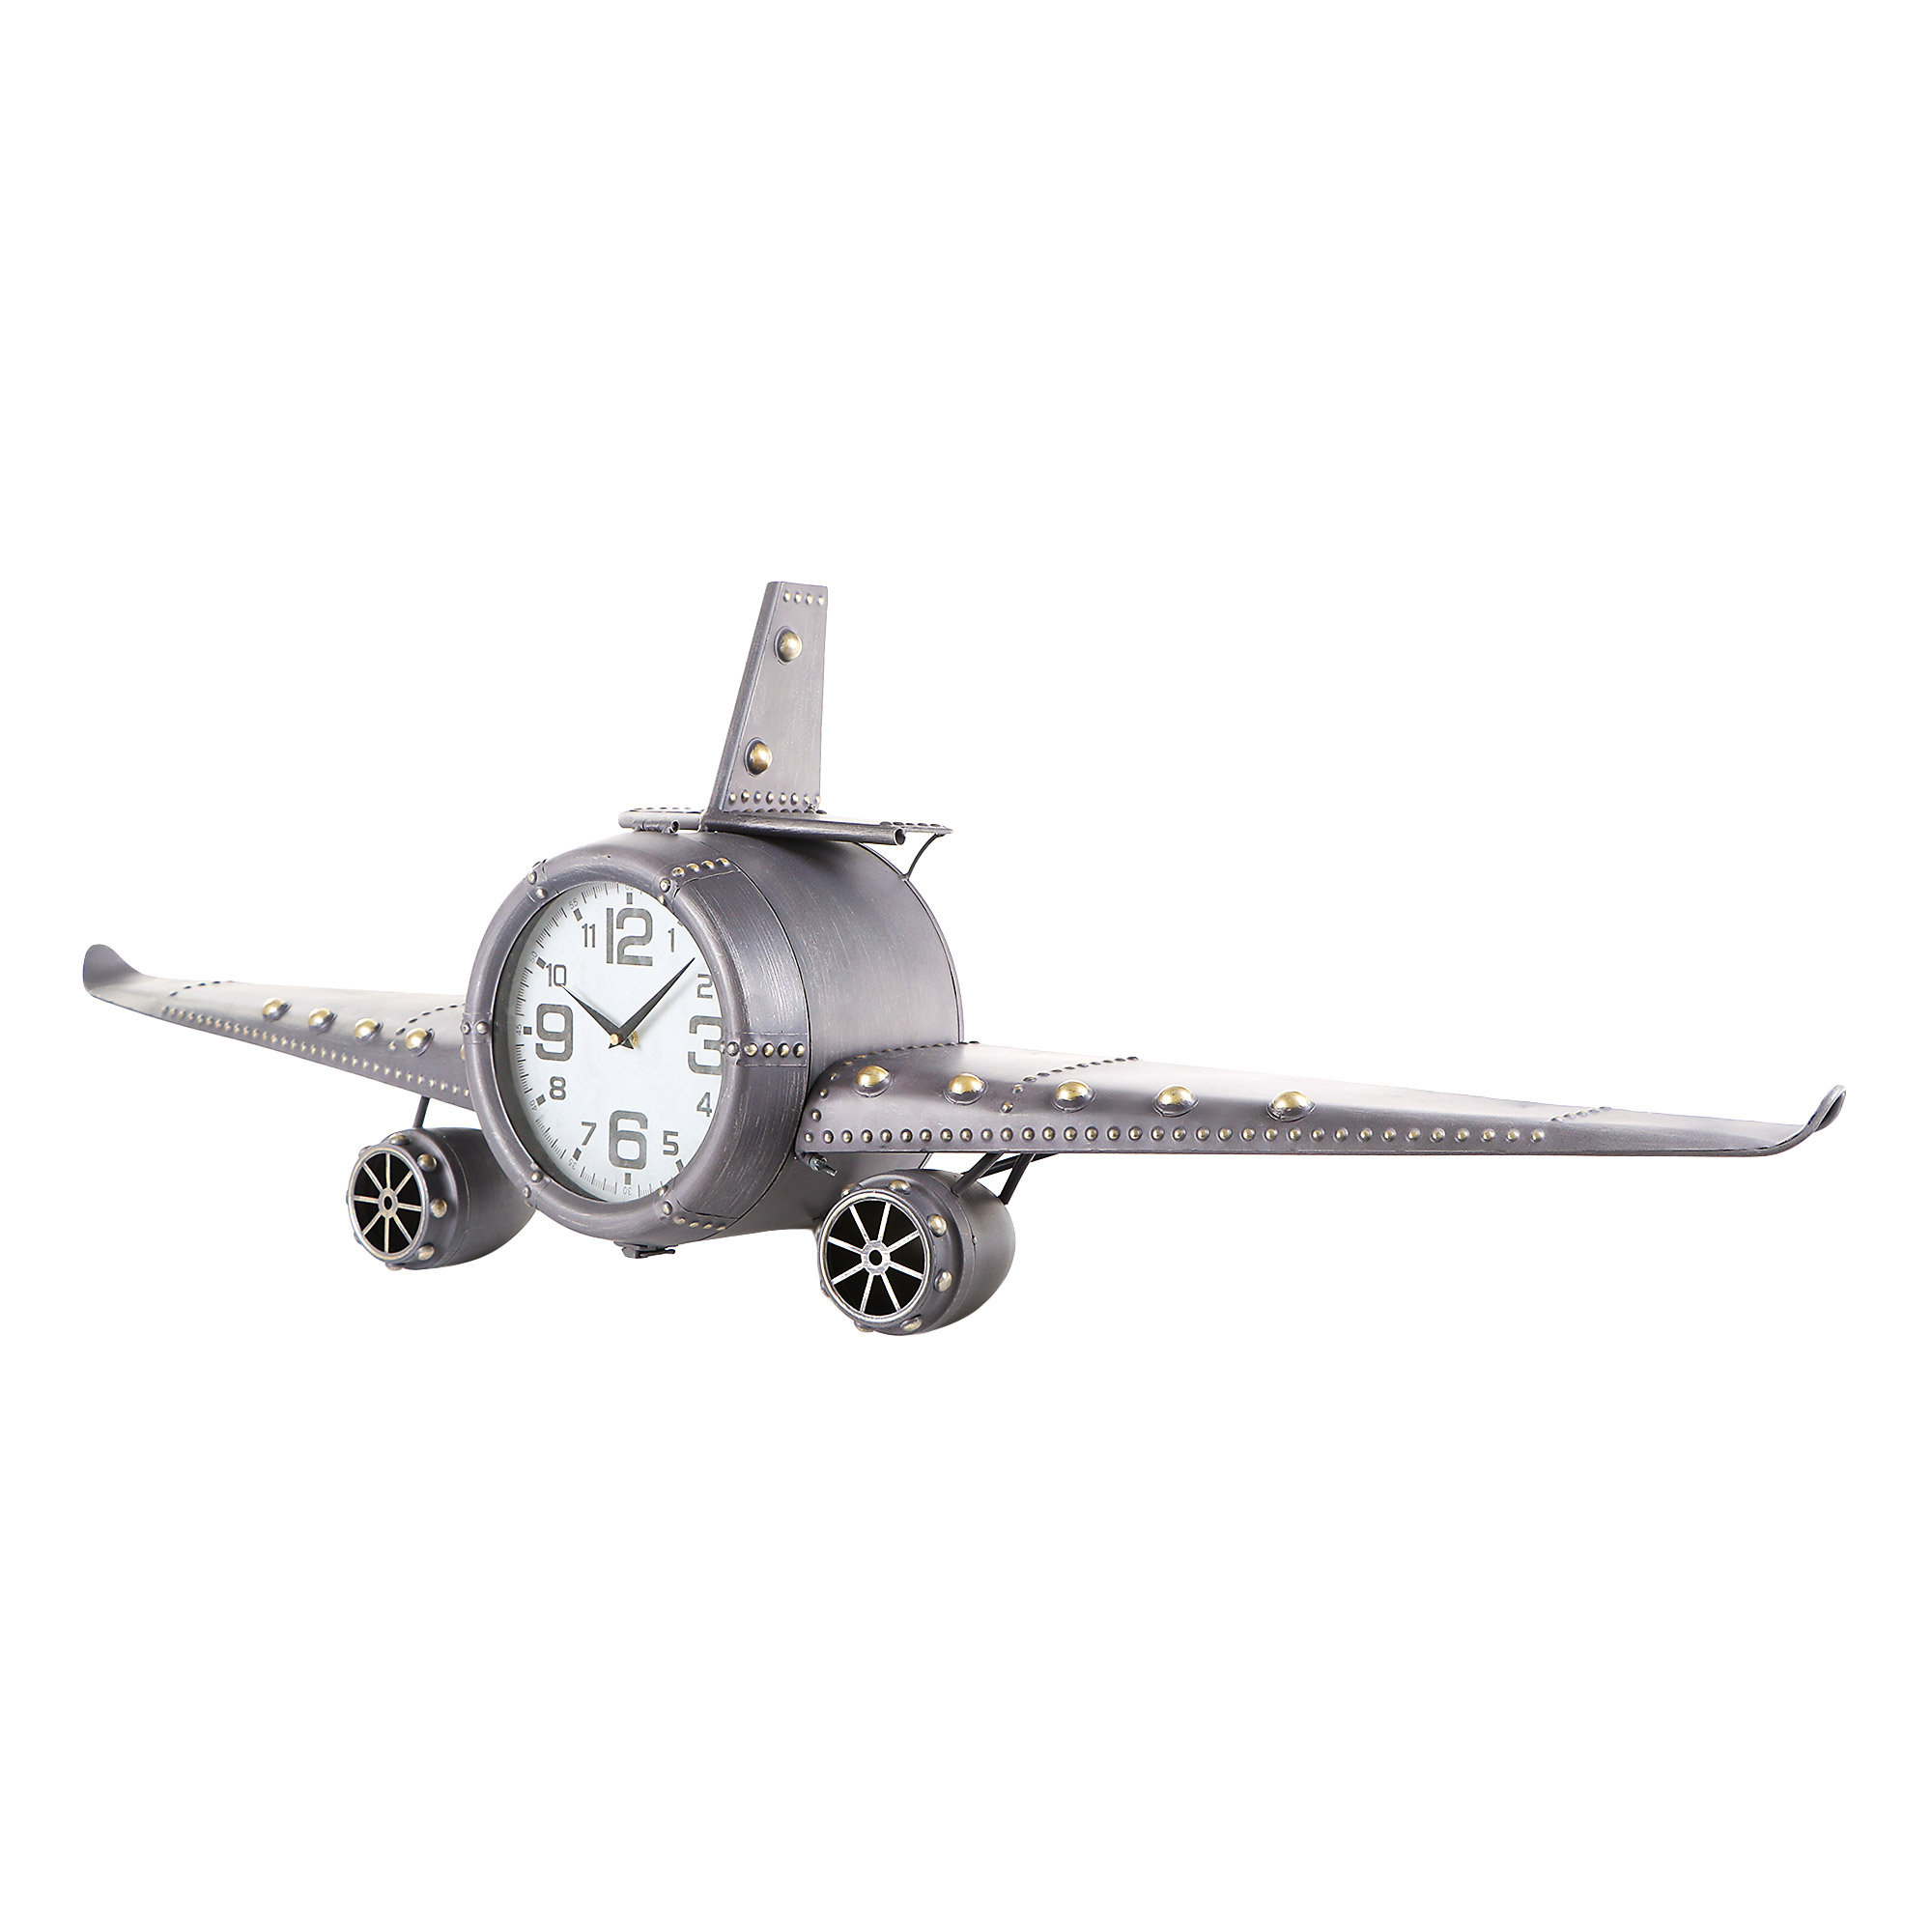 Часы самолет движущиеся. Bolai Arts часы самолет. Часы настенные Bolai Arts кукурузник 95х17.5х34 см. Часы настольные самолет. Часы самолет настенные металлические.